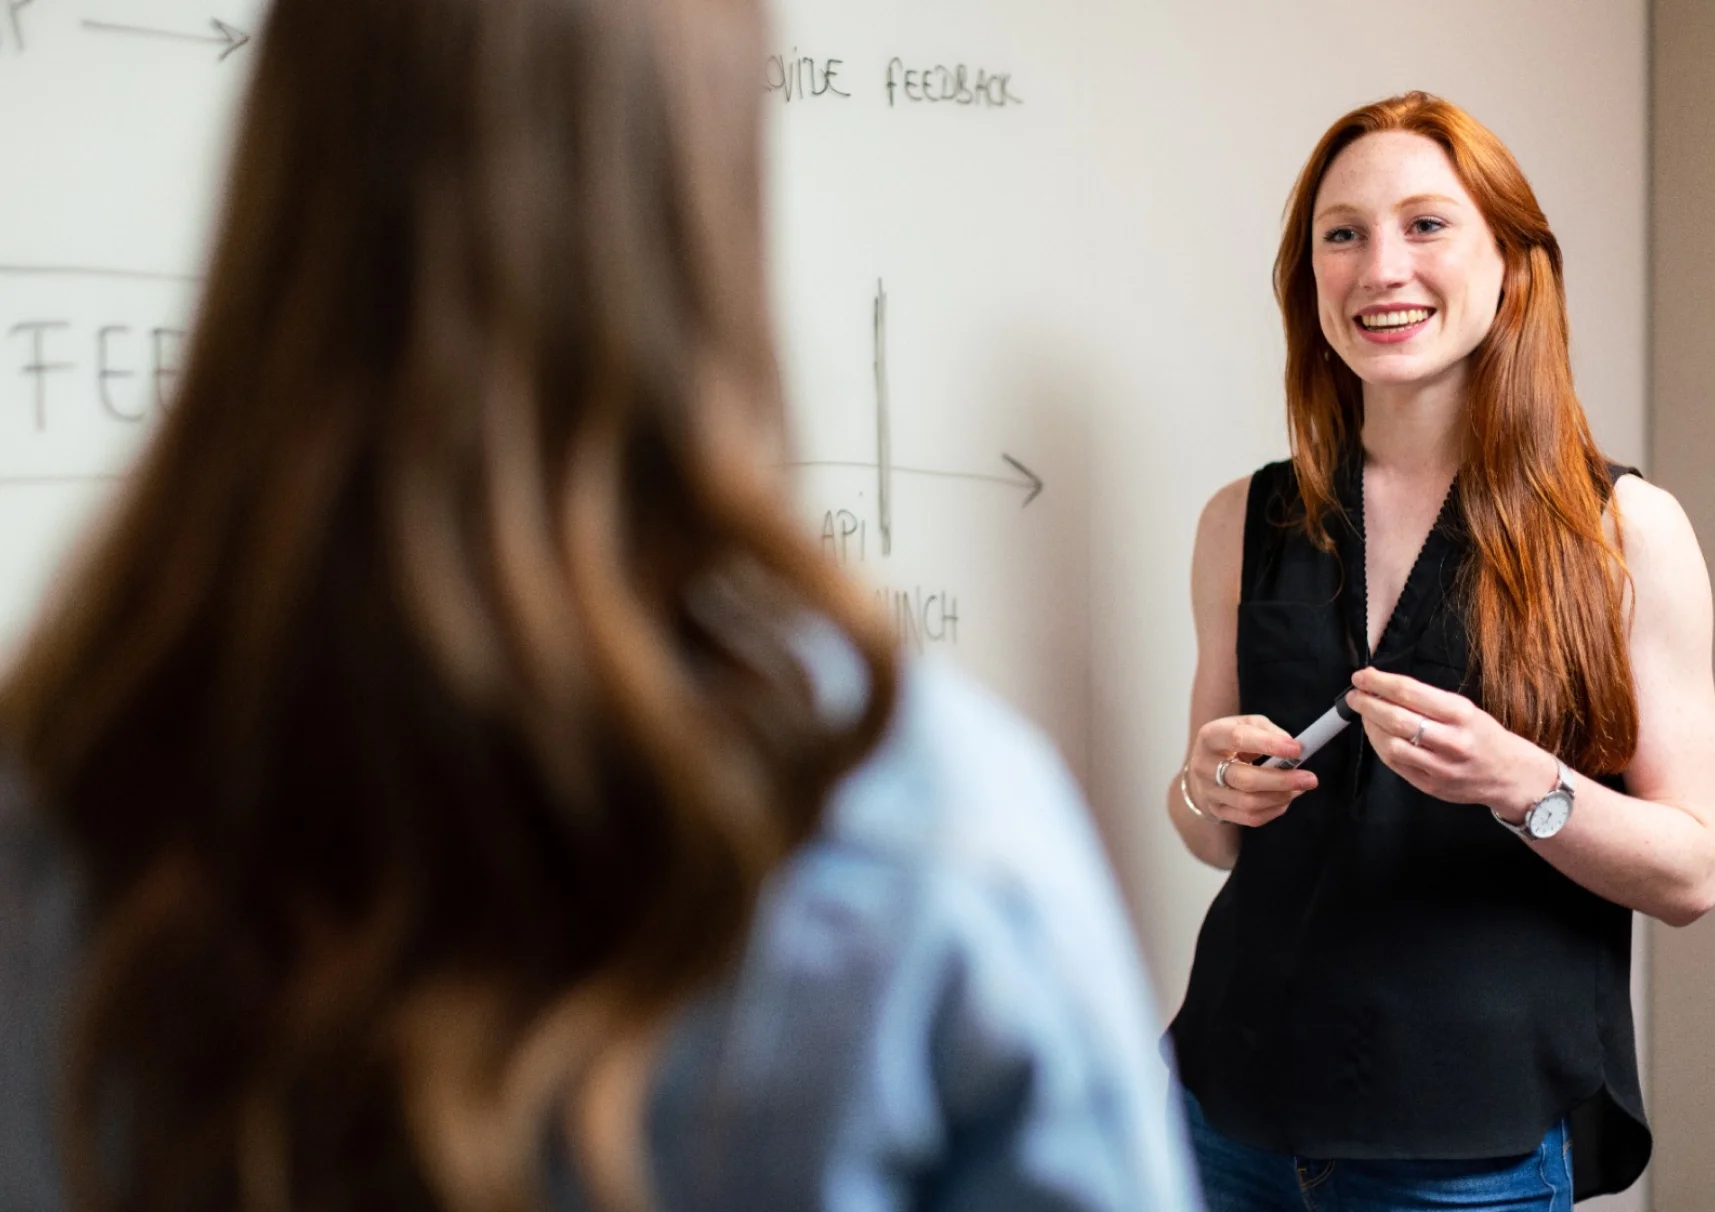 professora ruiva sorri para estudante em frente ao quadro-negro